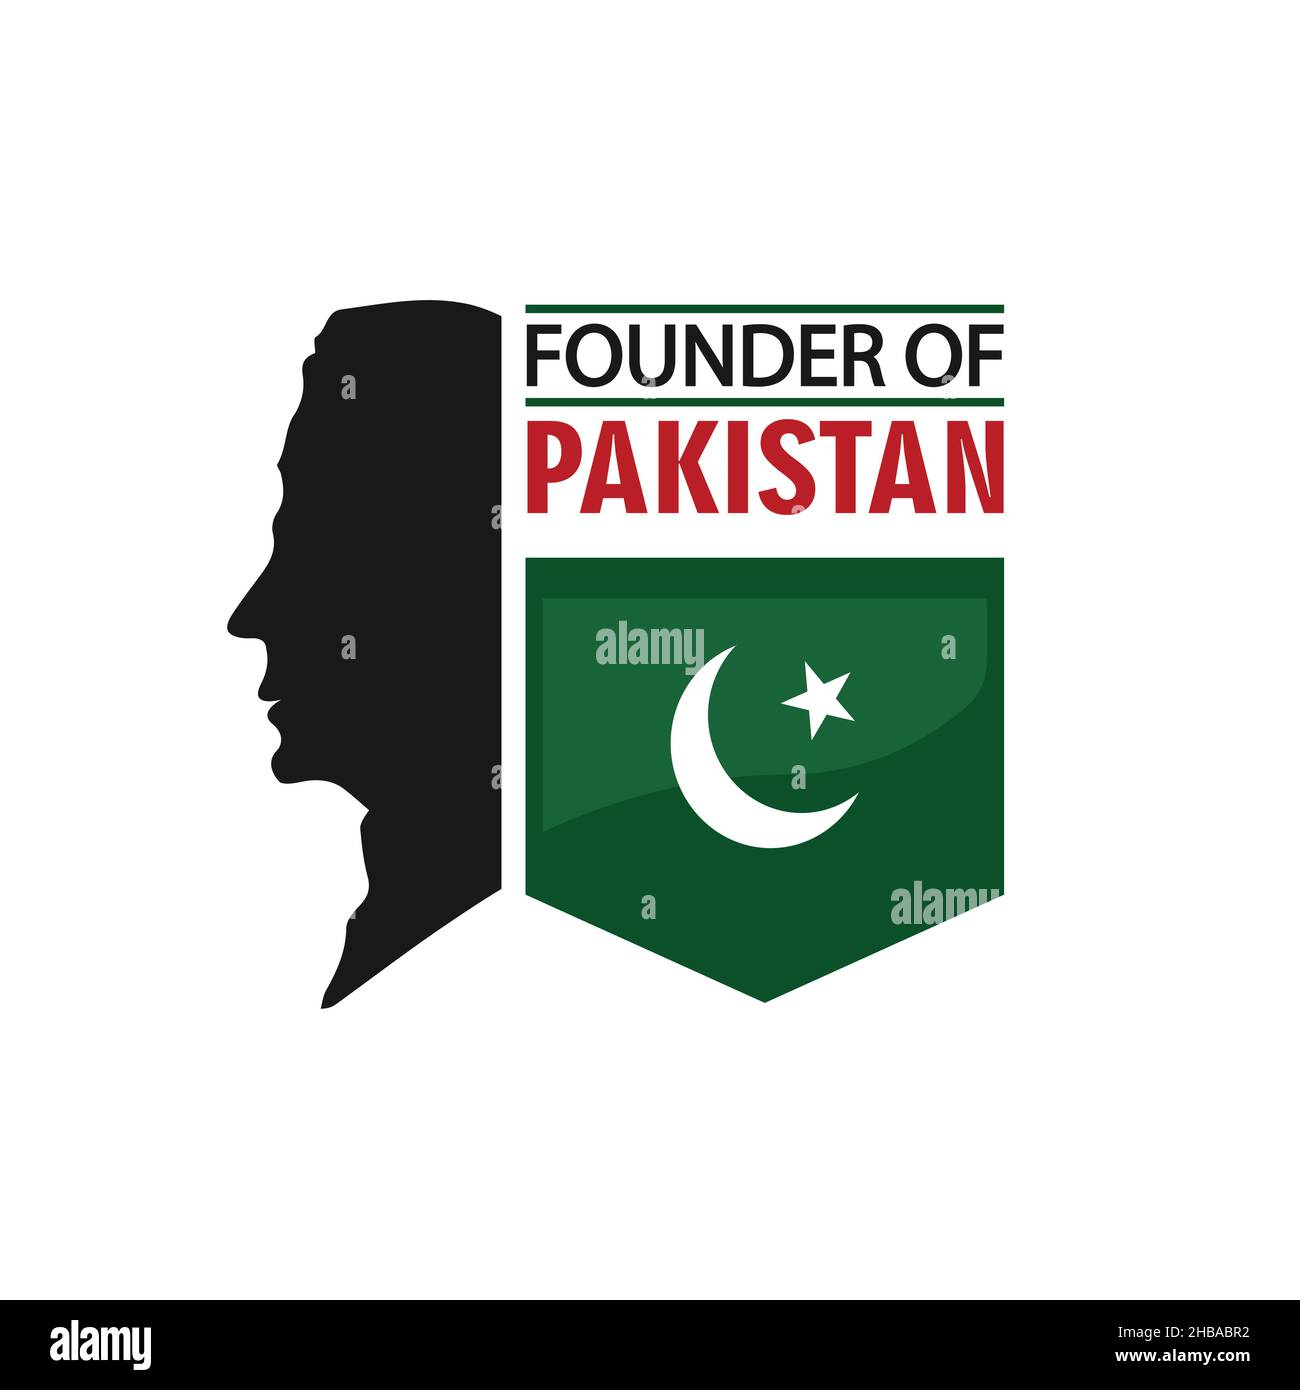 Quaid e Azam Day Celebration Poster Concept, 25 dicembre, Flat Design con bandiera pakistana Illustrazione Vettoriale